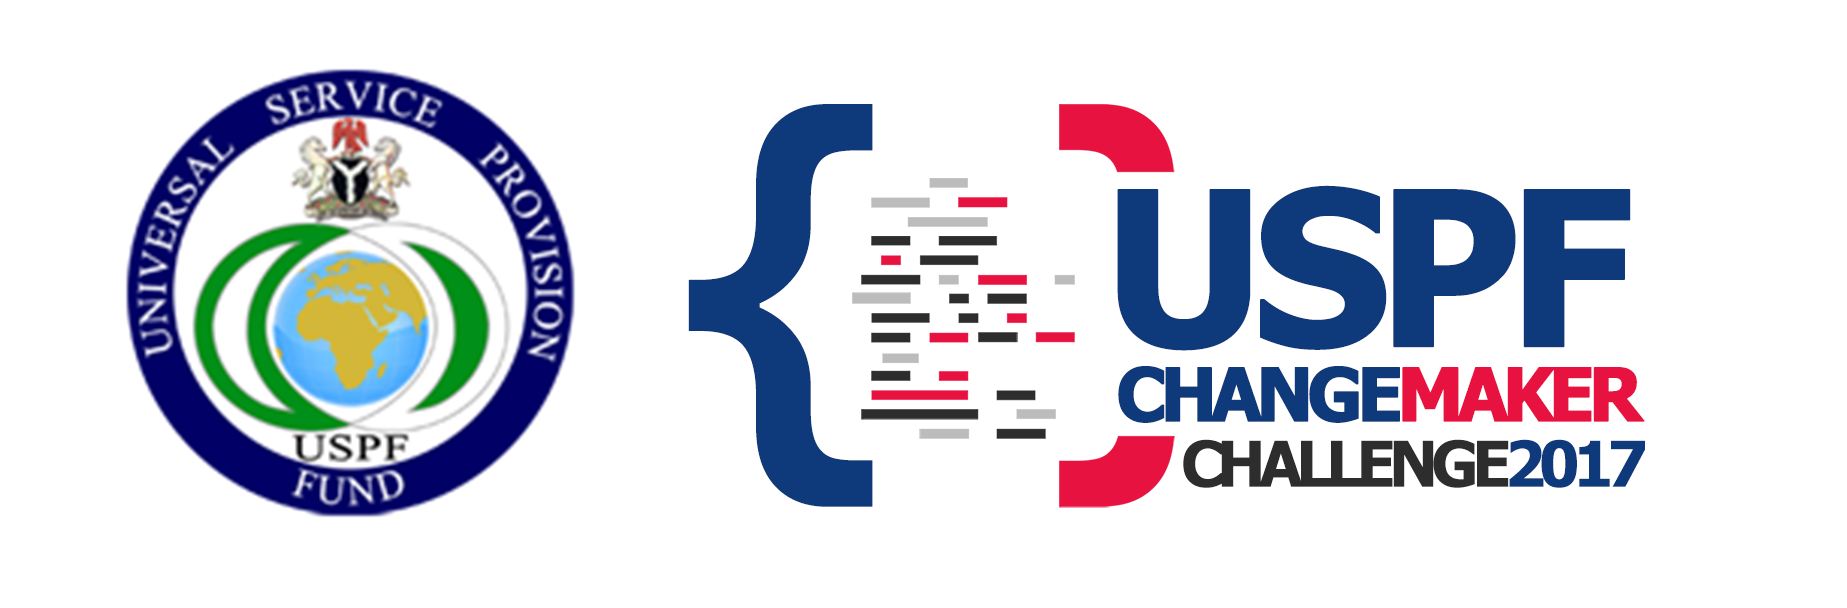 USPF Changemaker Challenge finals